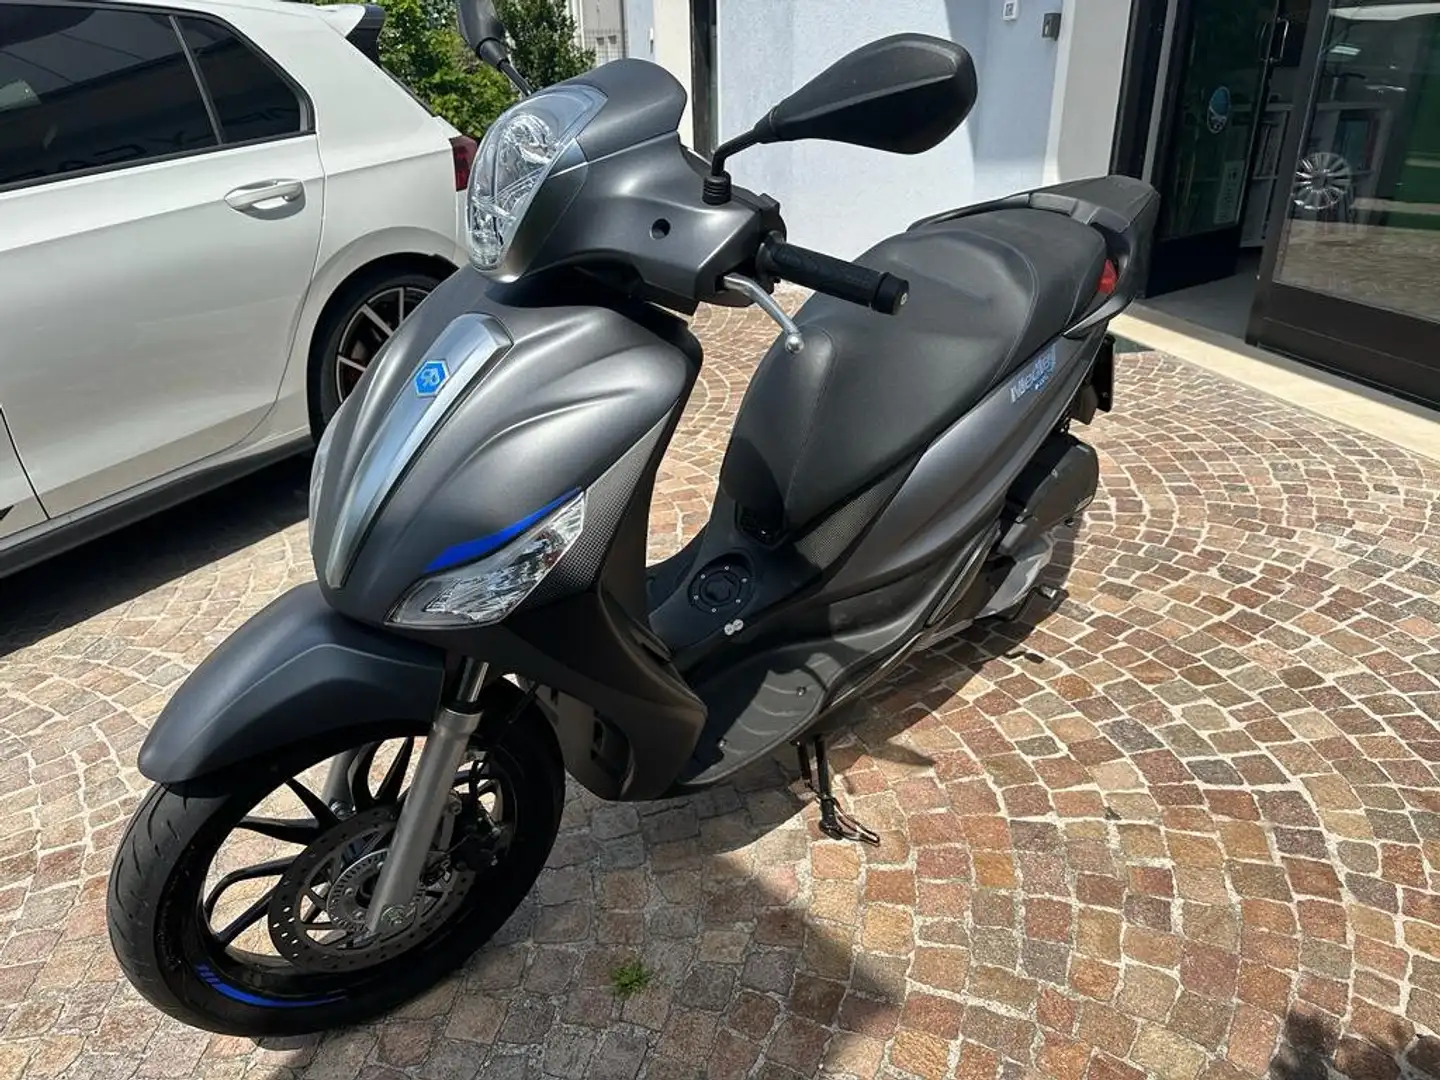 usato Piaggio Medley 125 Scooter a Trento per € 3.190,-